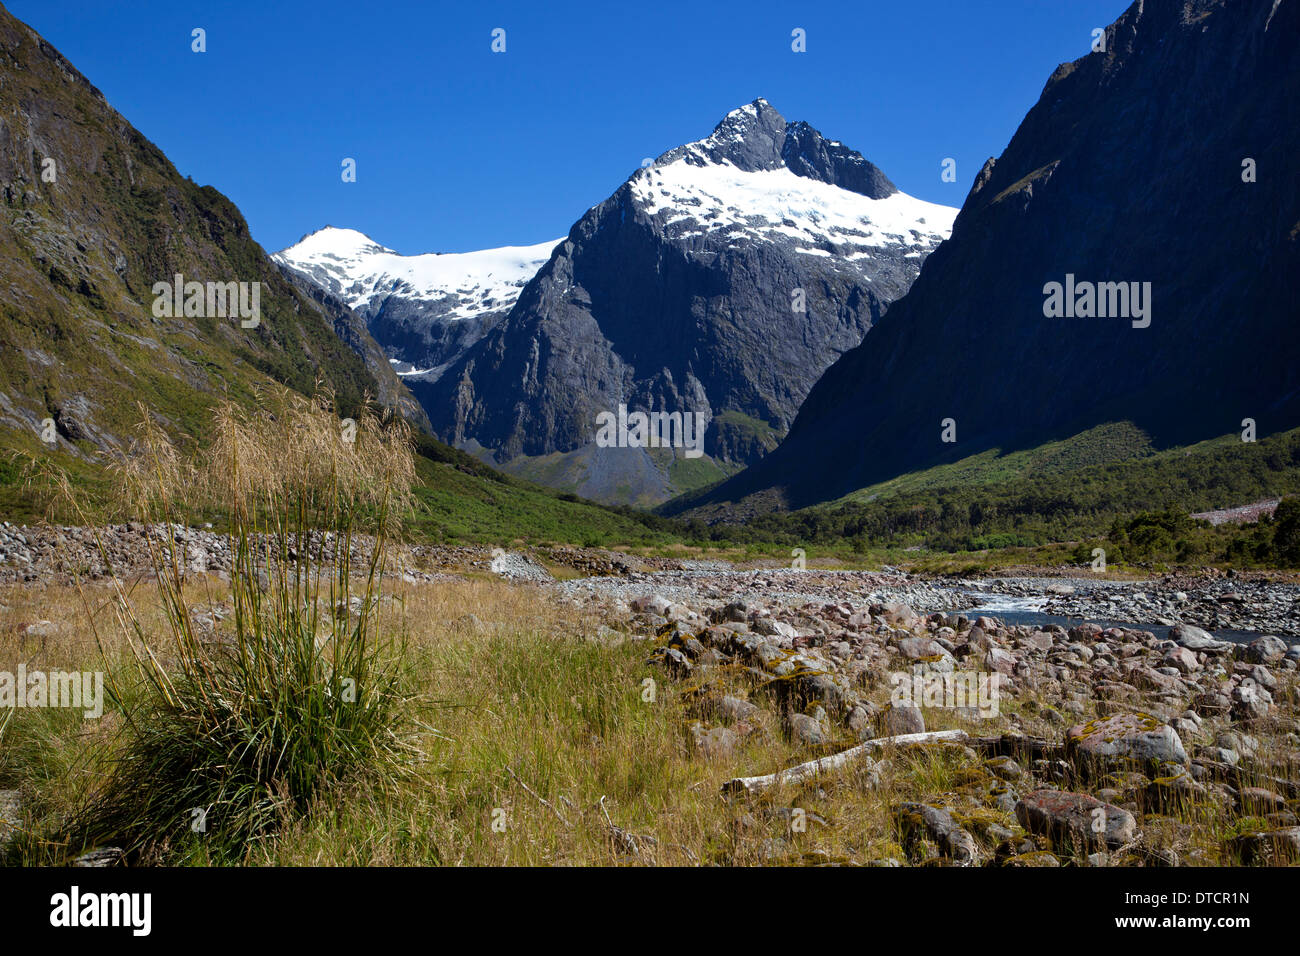 Afficher le long de la rivière vers le Mont Christina sur route pour Milford Sound, Fiordland, île du Sud, Nouvelle-Zélande Banque D'Images